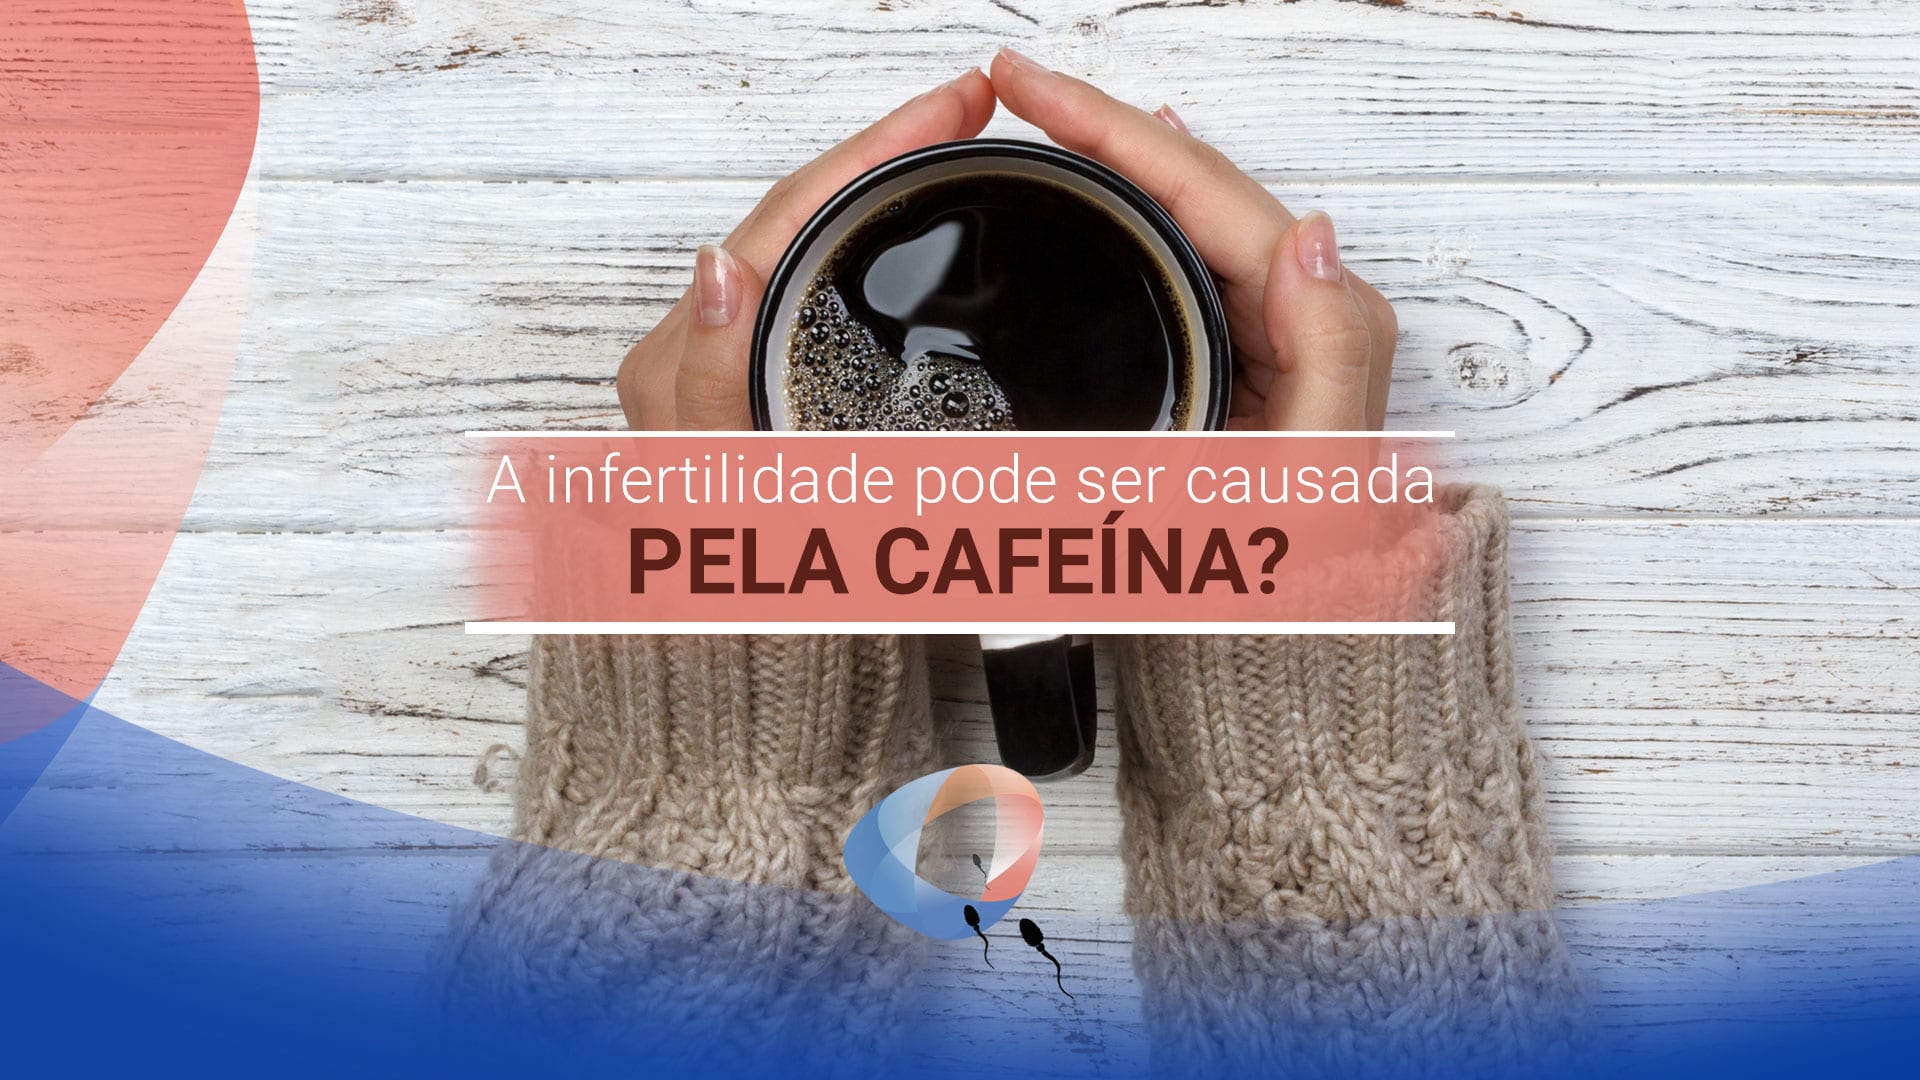 A infertilidade pode ser causada pela cafeína?